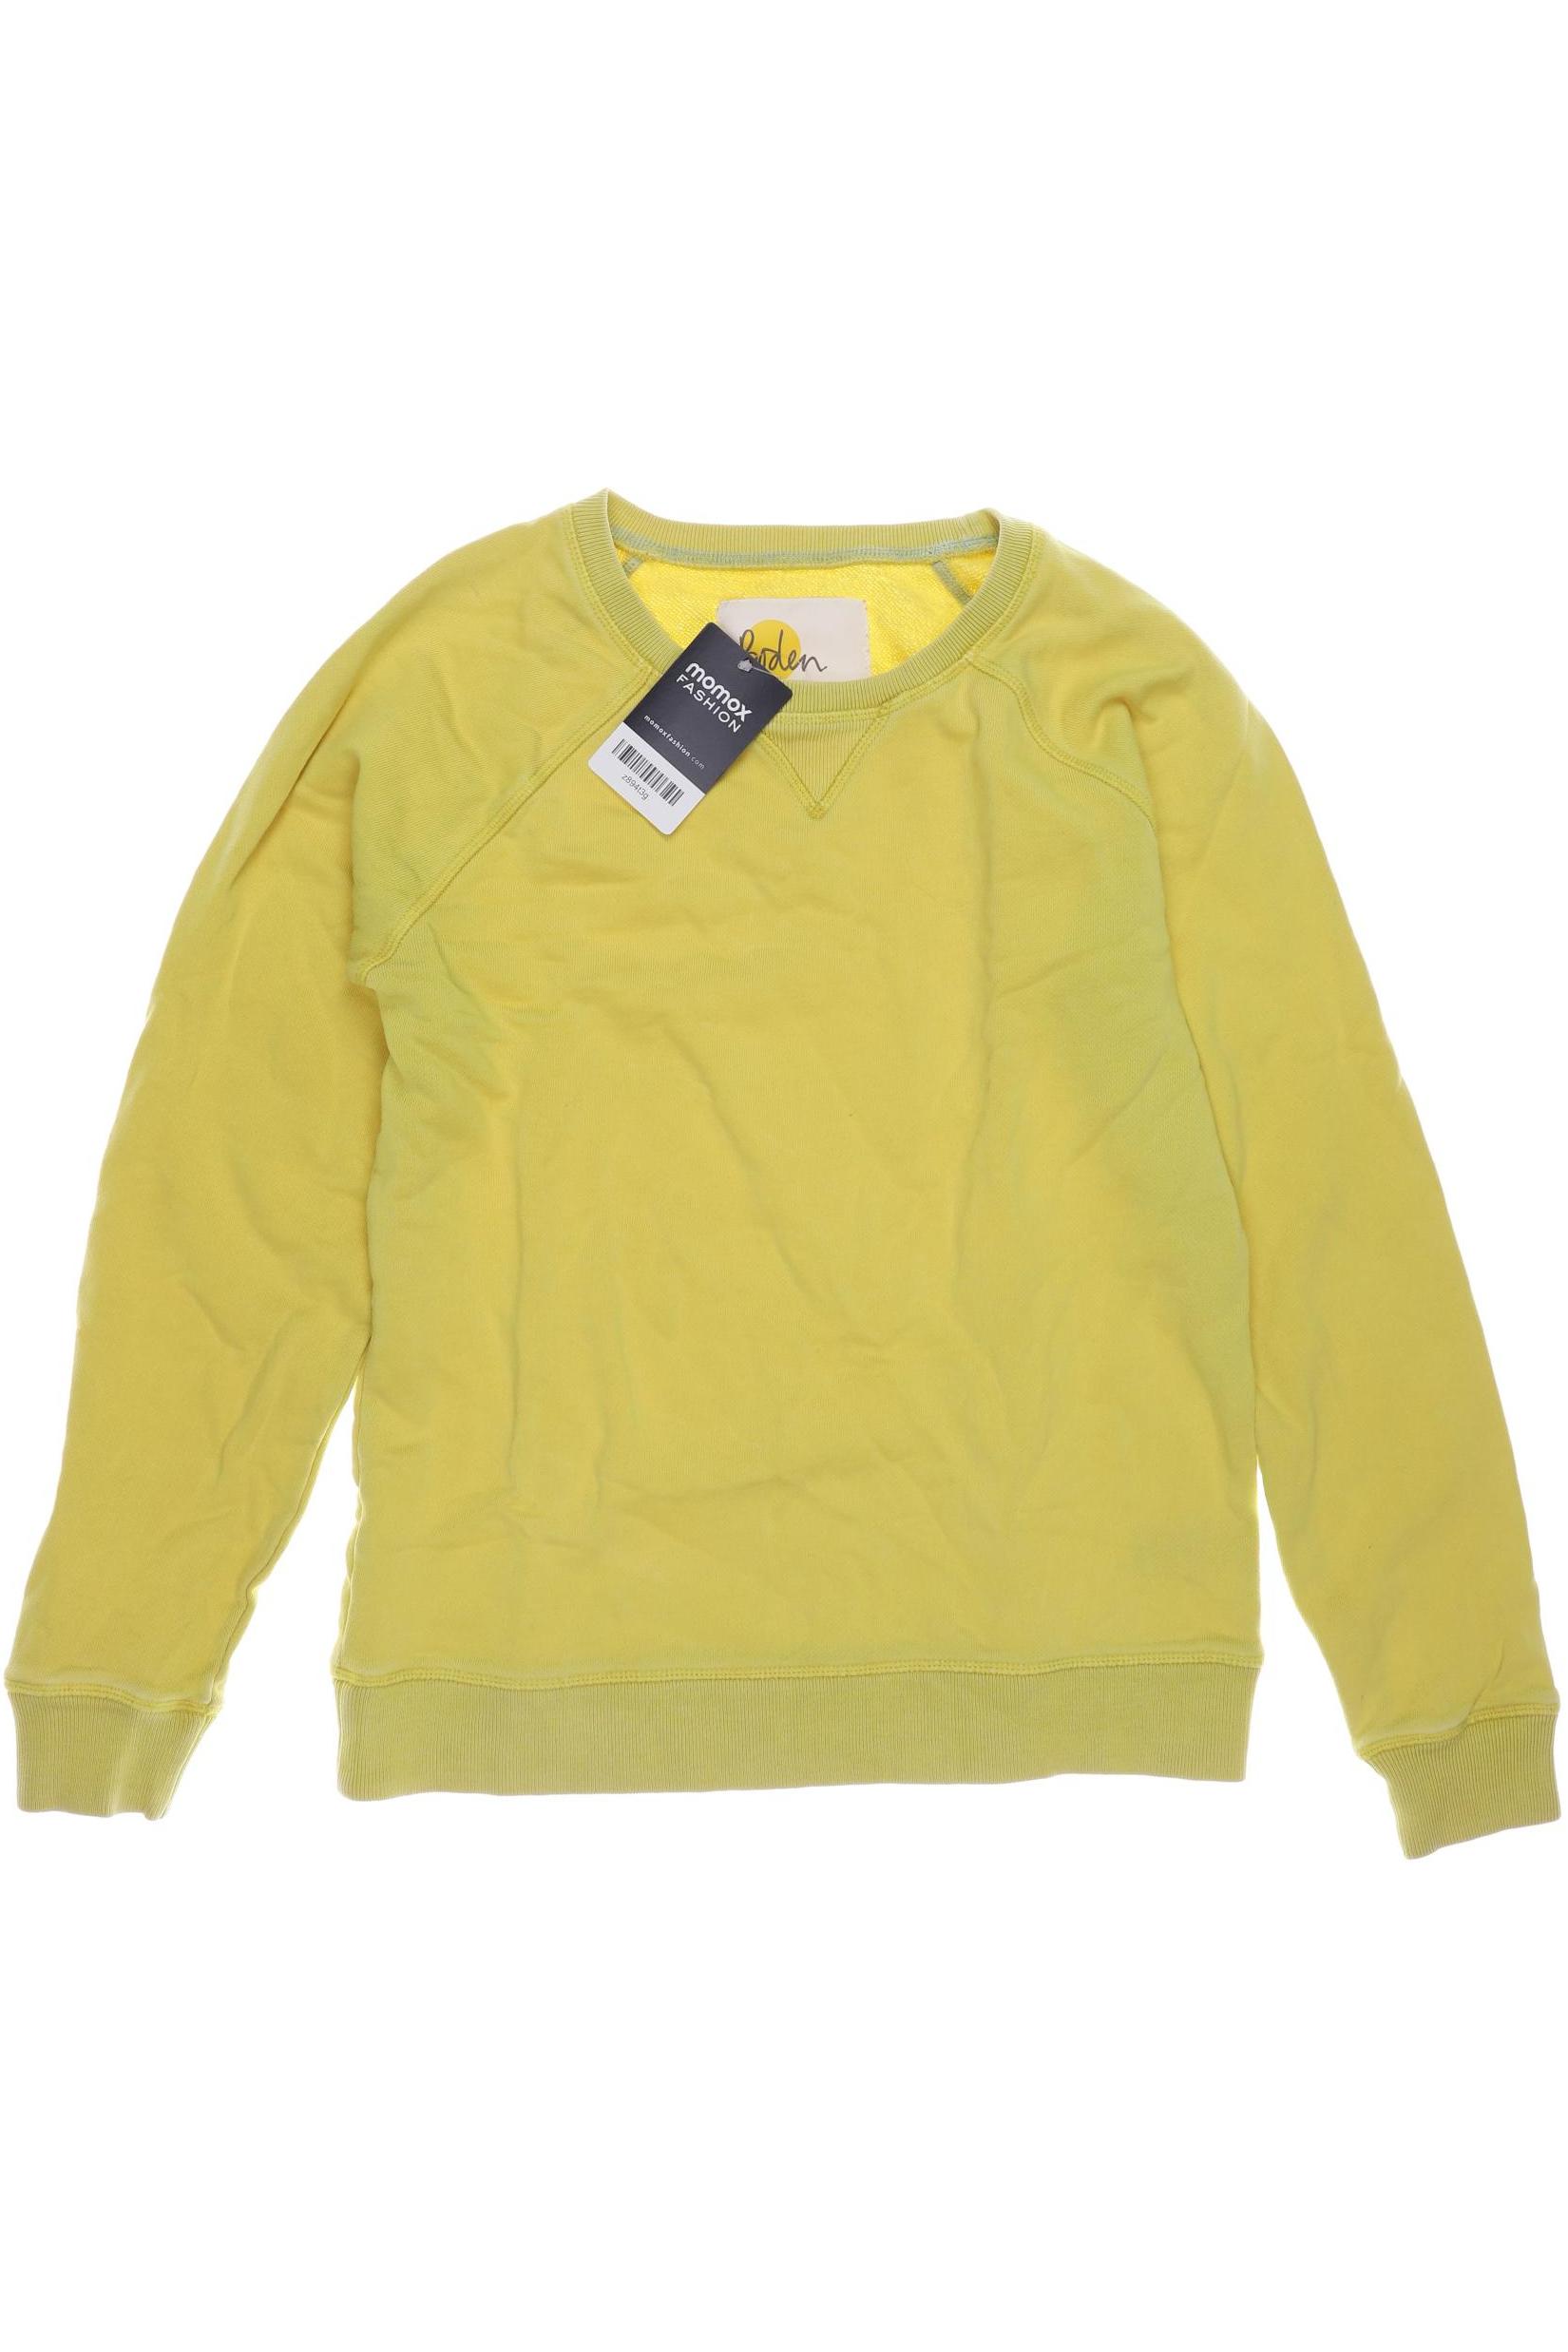 Mini Boden Mädchen Hoodies & Sweater, gelb von Mini Boden